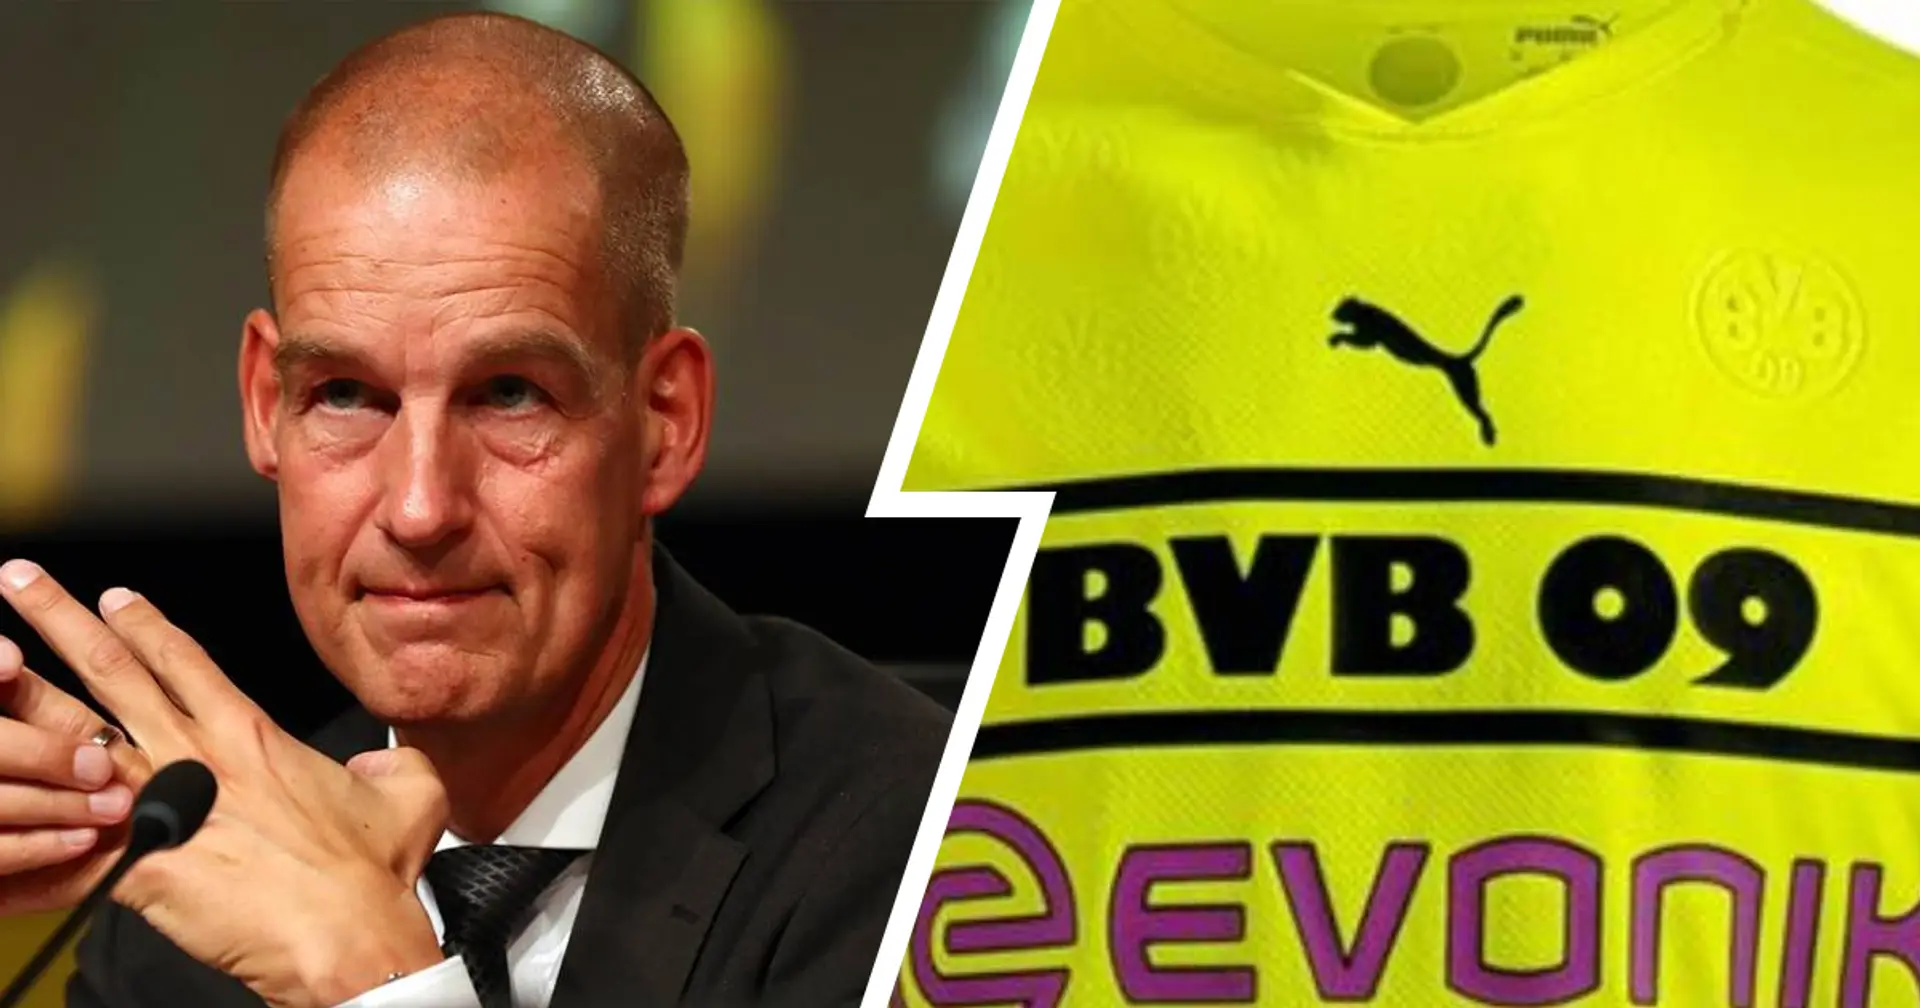 BVB-Marketingboss Cramer über Trikot-Wirbel: "Kritik der Fans haben wir ernstgenommen"